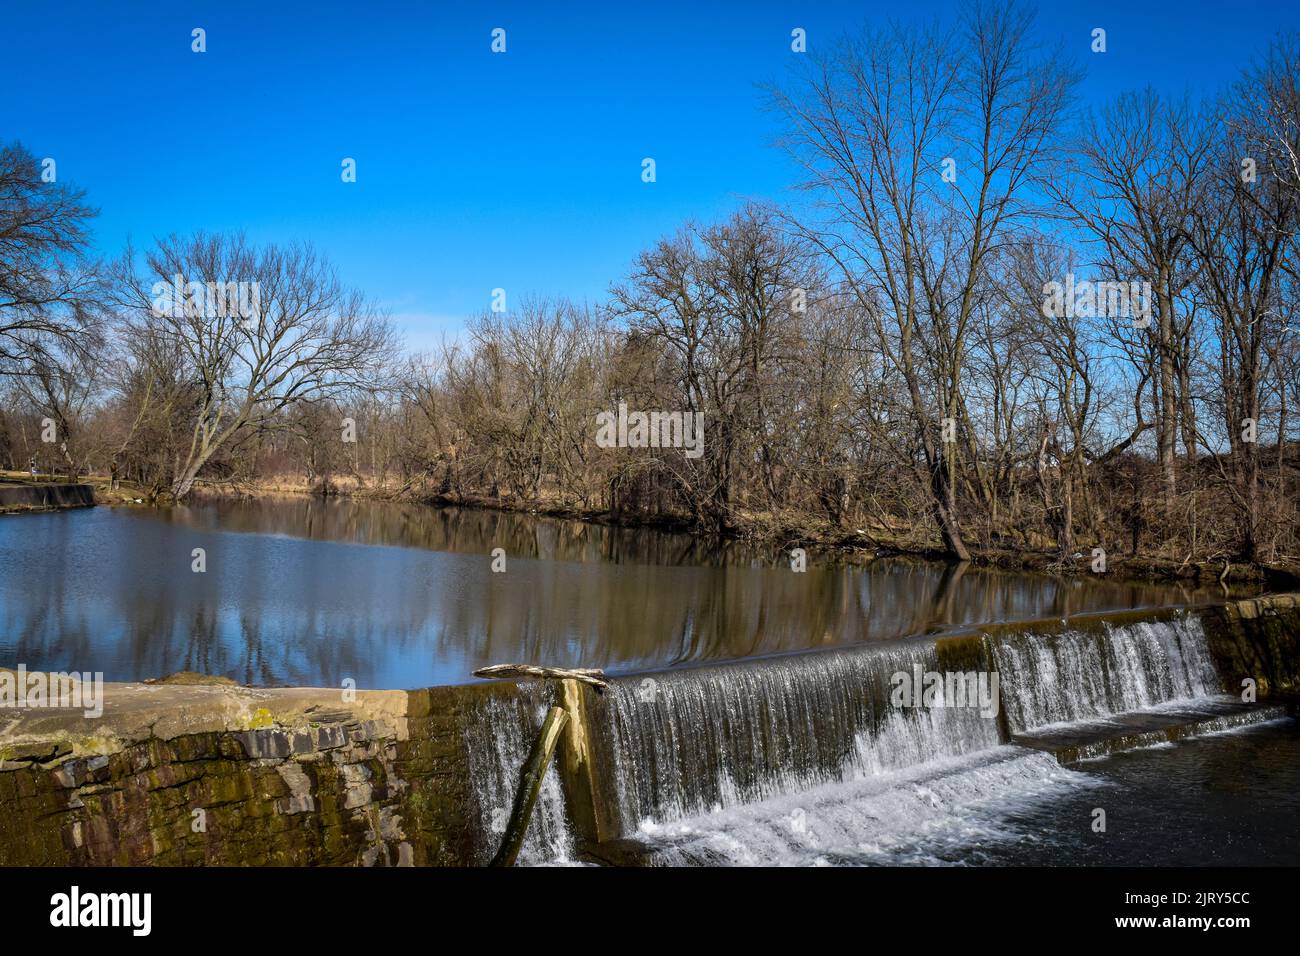 Ein Blick auf einen von Menschen gemachten Damm und Wasserfall, der an einem sonnigen Wintertag auf dem Land gefunden wurde Stockfoto